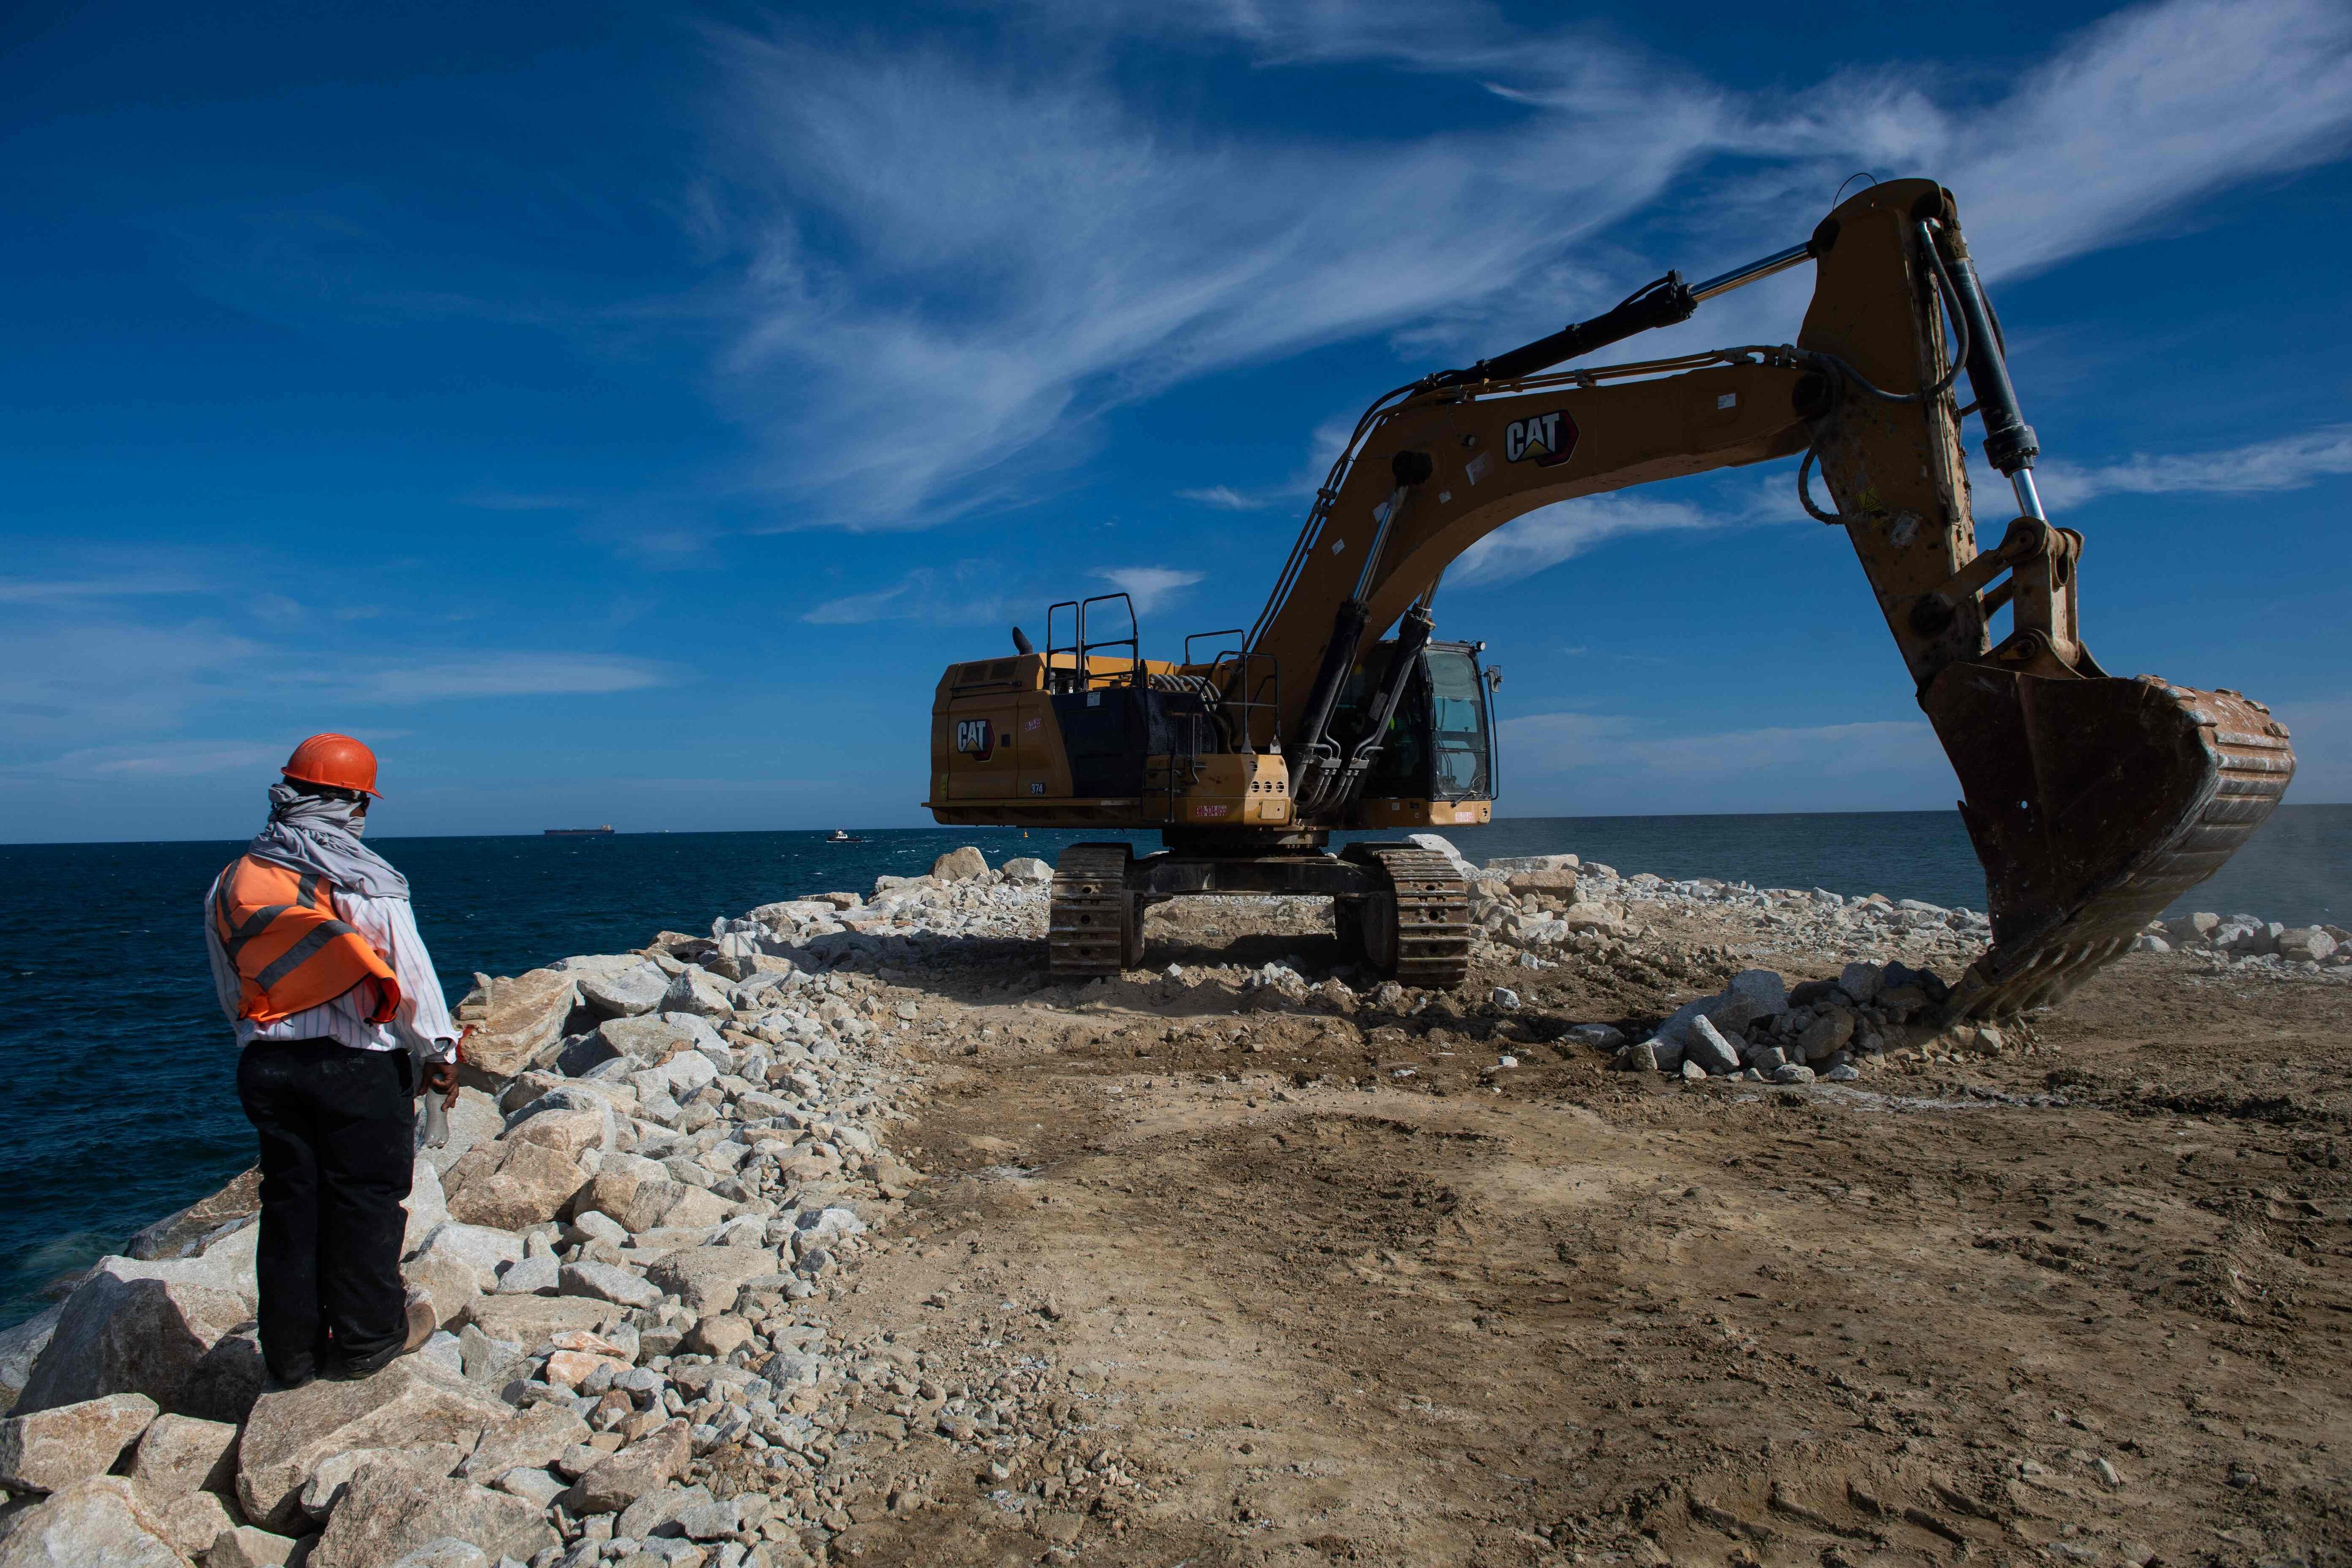 Un trabajador supervisa los trabajos de construcción de un rompeolas en el puerto de Salina Cruz, Oaxaca, como parte de las obras de ampliación del Ferrocarril Interoceánico que conecta el Océano Pacífico y el Golfo de México, como una opción logística del Canal de Panamá.